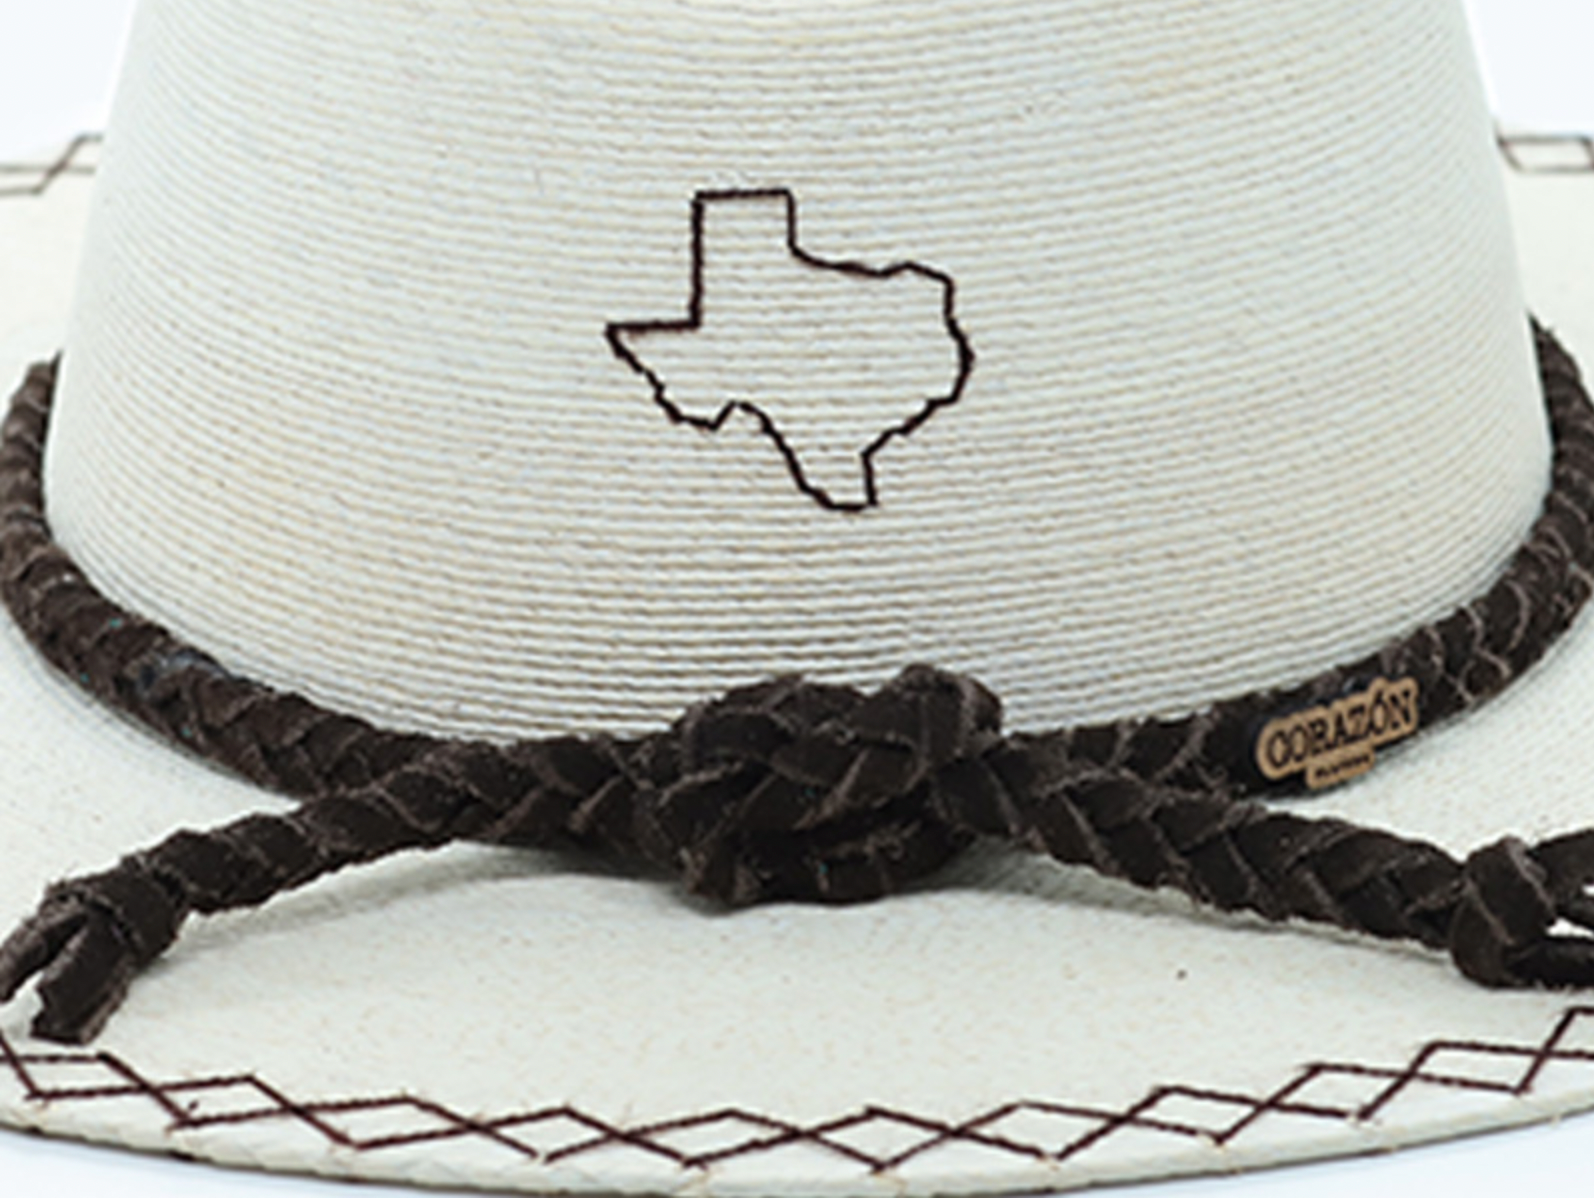 Exclusive Texan La Palma Hat by Corazon Playero - Preorder